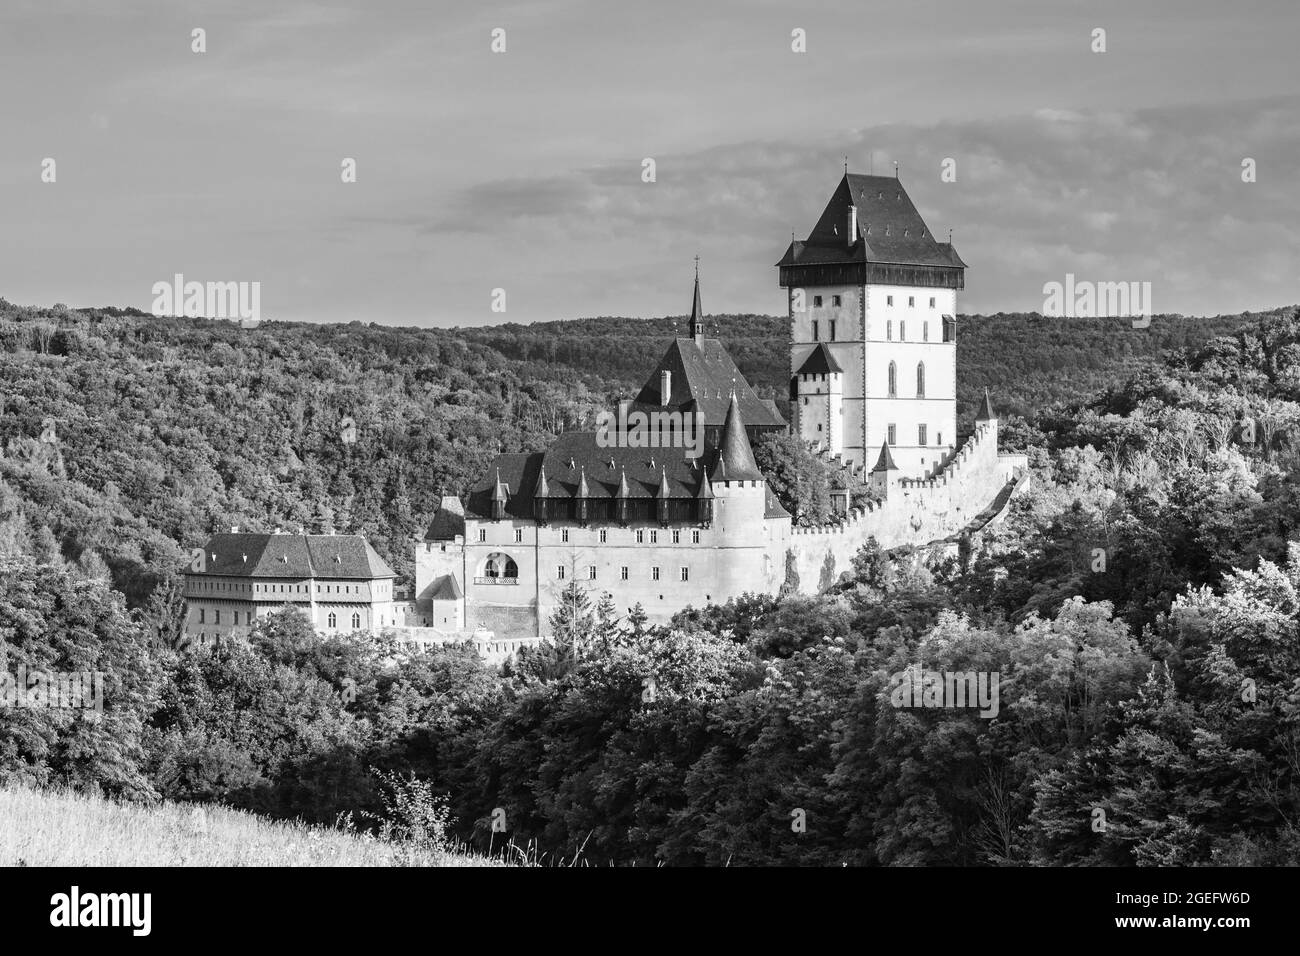 Karlstejn - Castello reale gotico nella Boemia centrale fondato nel 1348 da Carlo IV, Imperatore Sacro Romano e Re di Boemia. Repubblica Ceca. Immagine in bianco e nero. Foto Stock